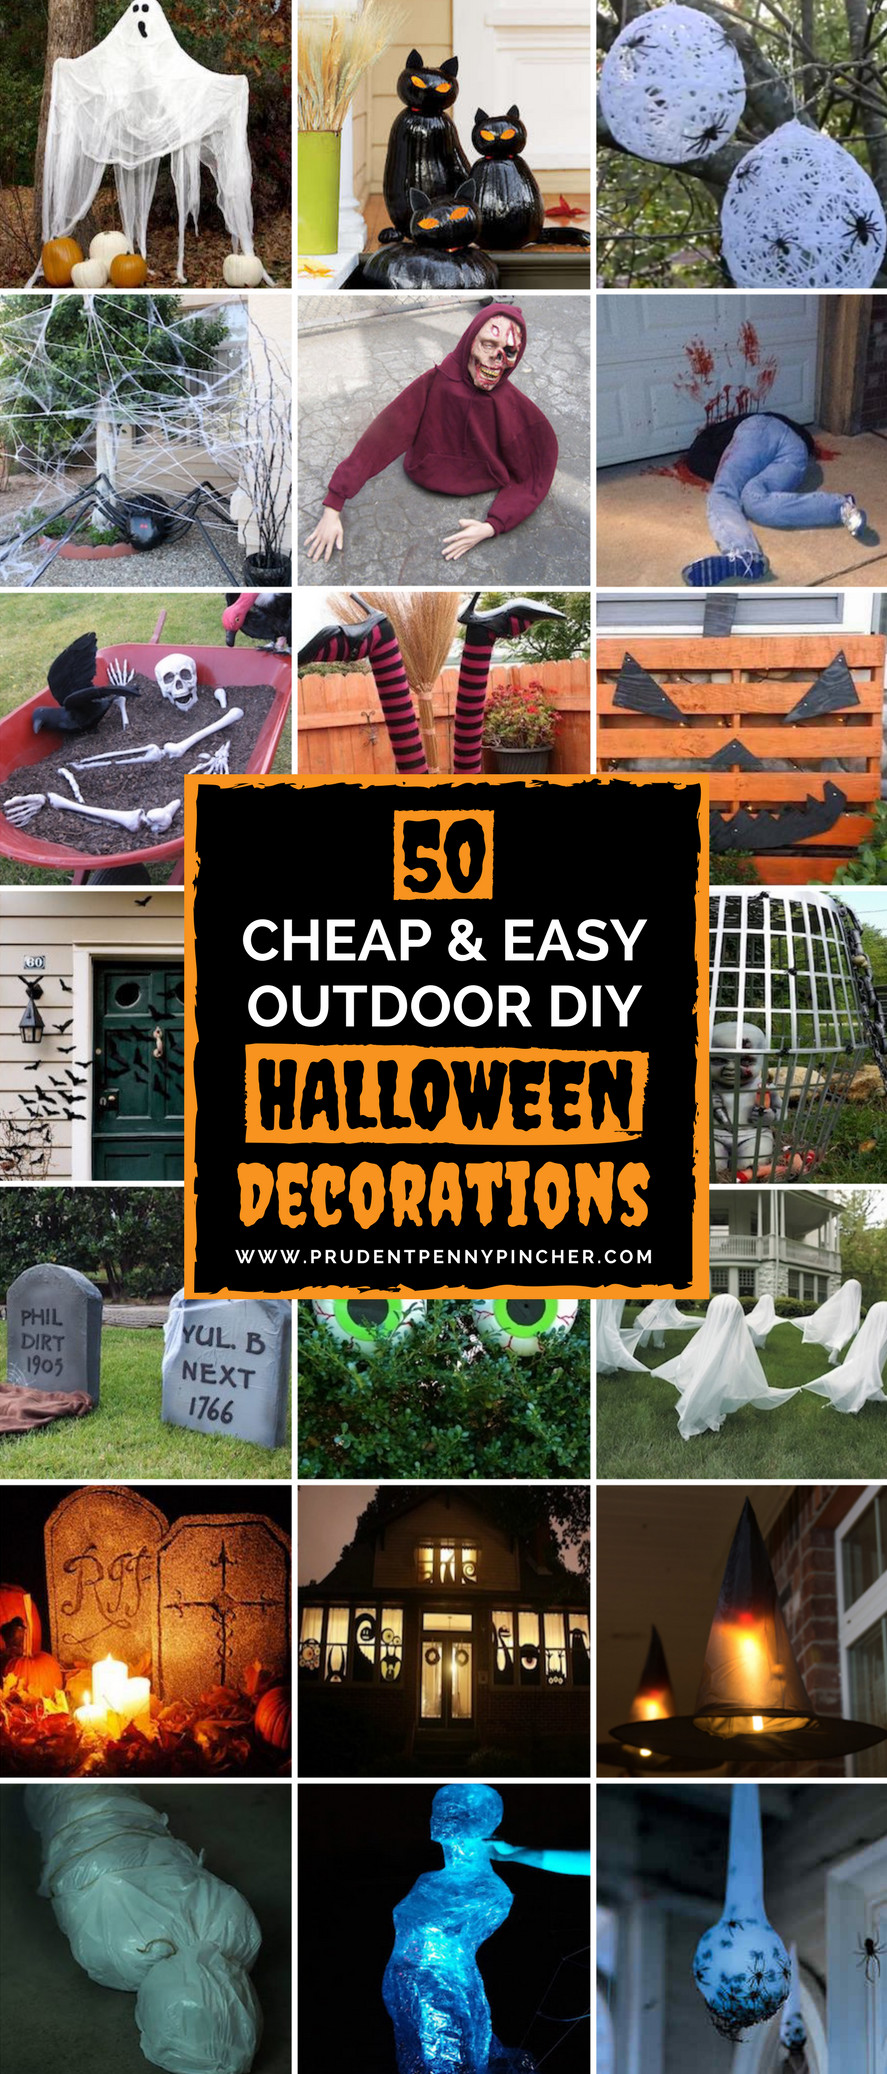 DIY Outdoor Halloween Props
 50 Cheap and Easy Outdoor Halloween Decor DIY Ideas